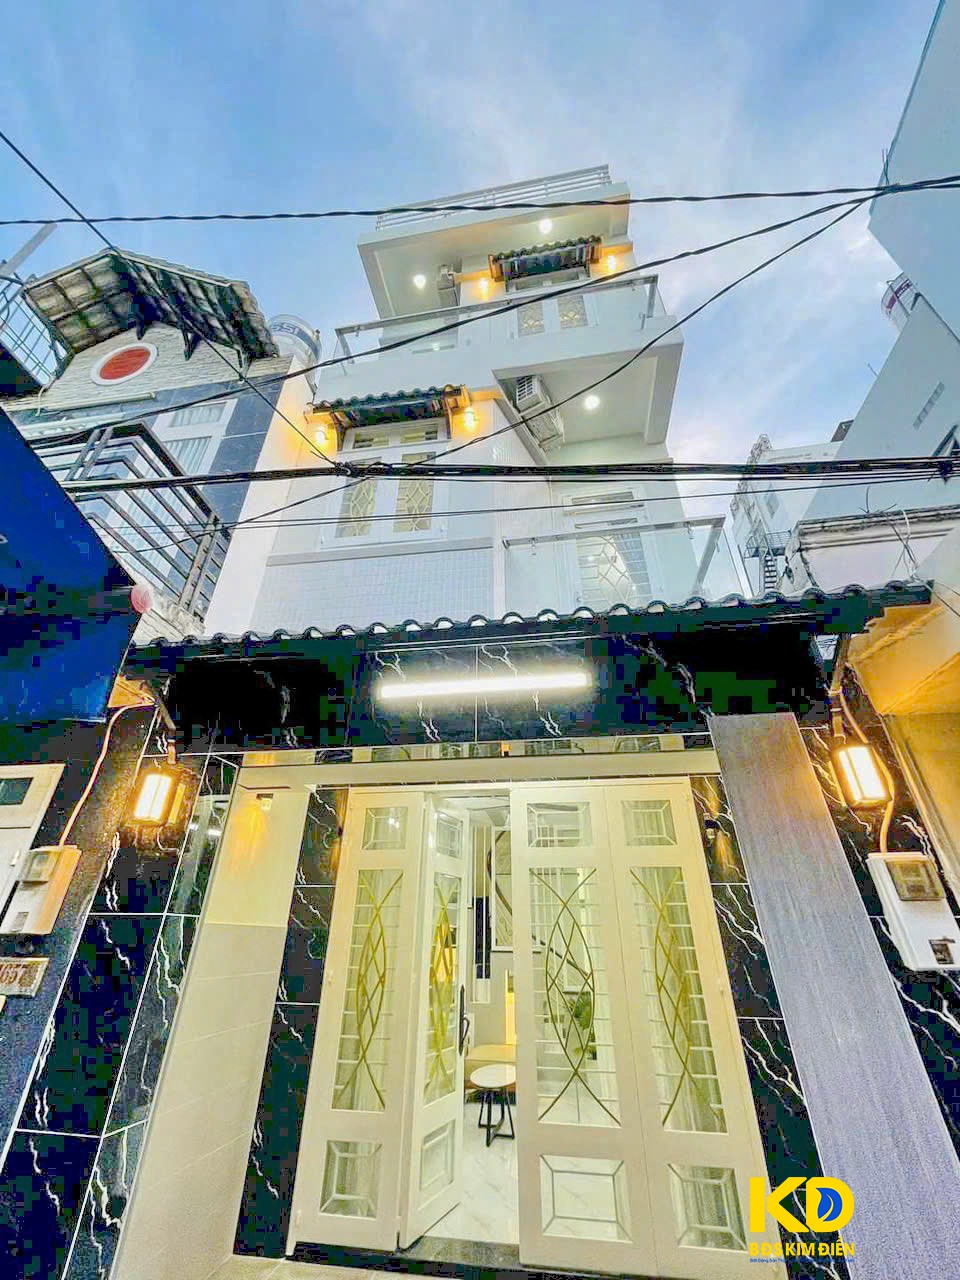 Bán nhà phố 2 lầu sân thượng mới đẹp lô nhì Huỳnh Tấn Phát P. Phú Mỹ Q7.